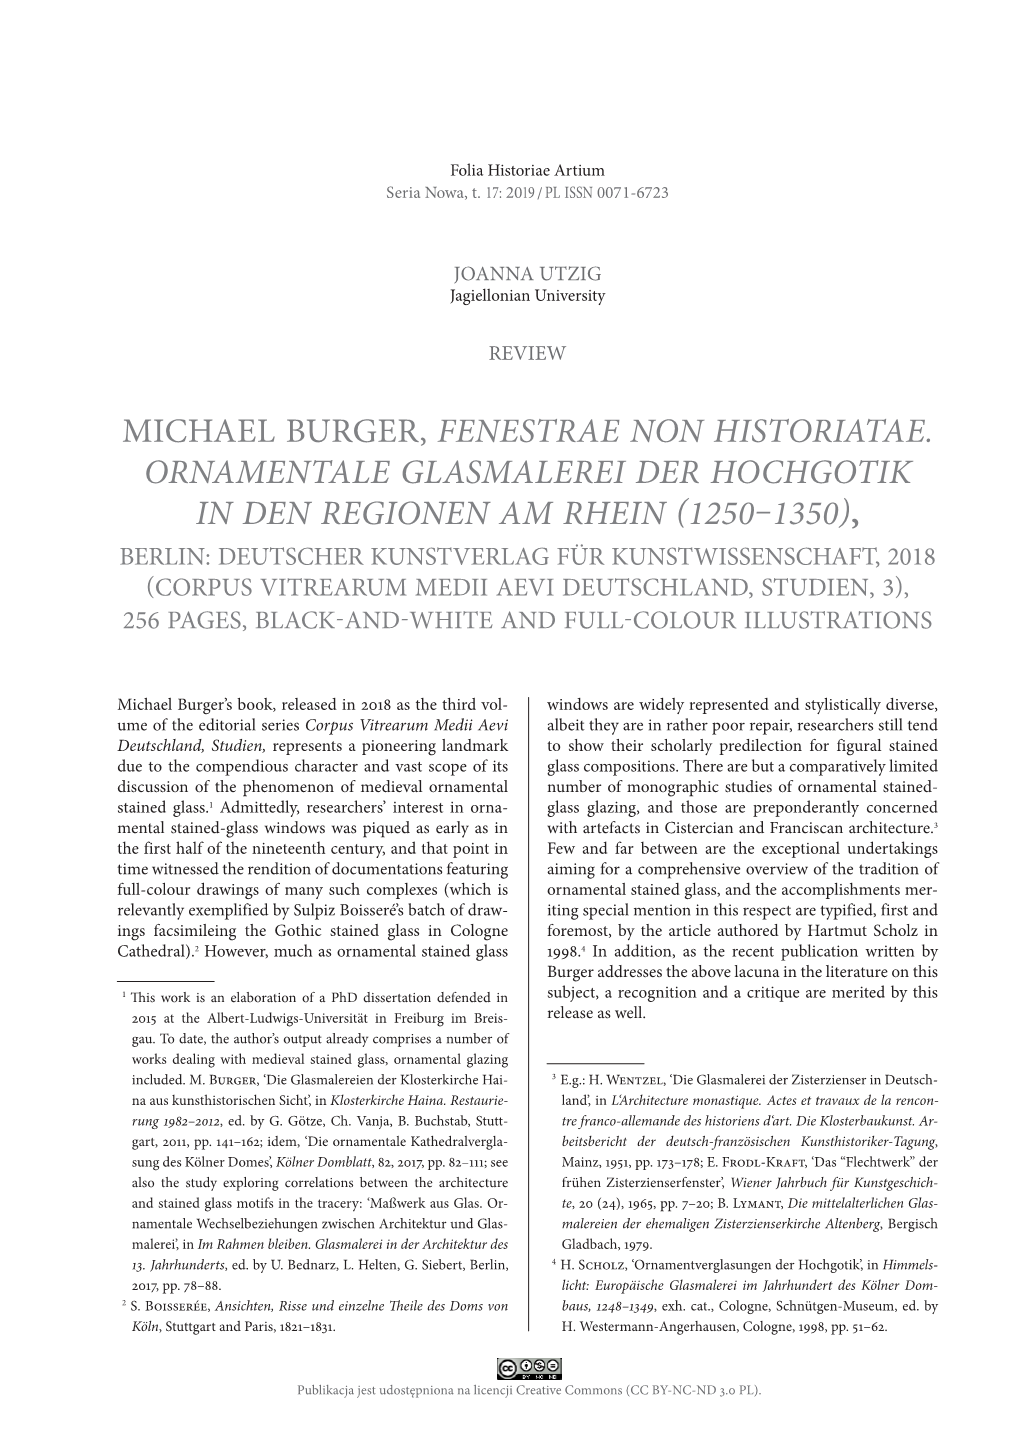 Michael Burger, Fenestrae Non Historiatae